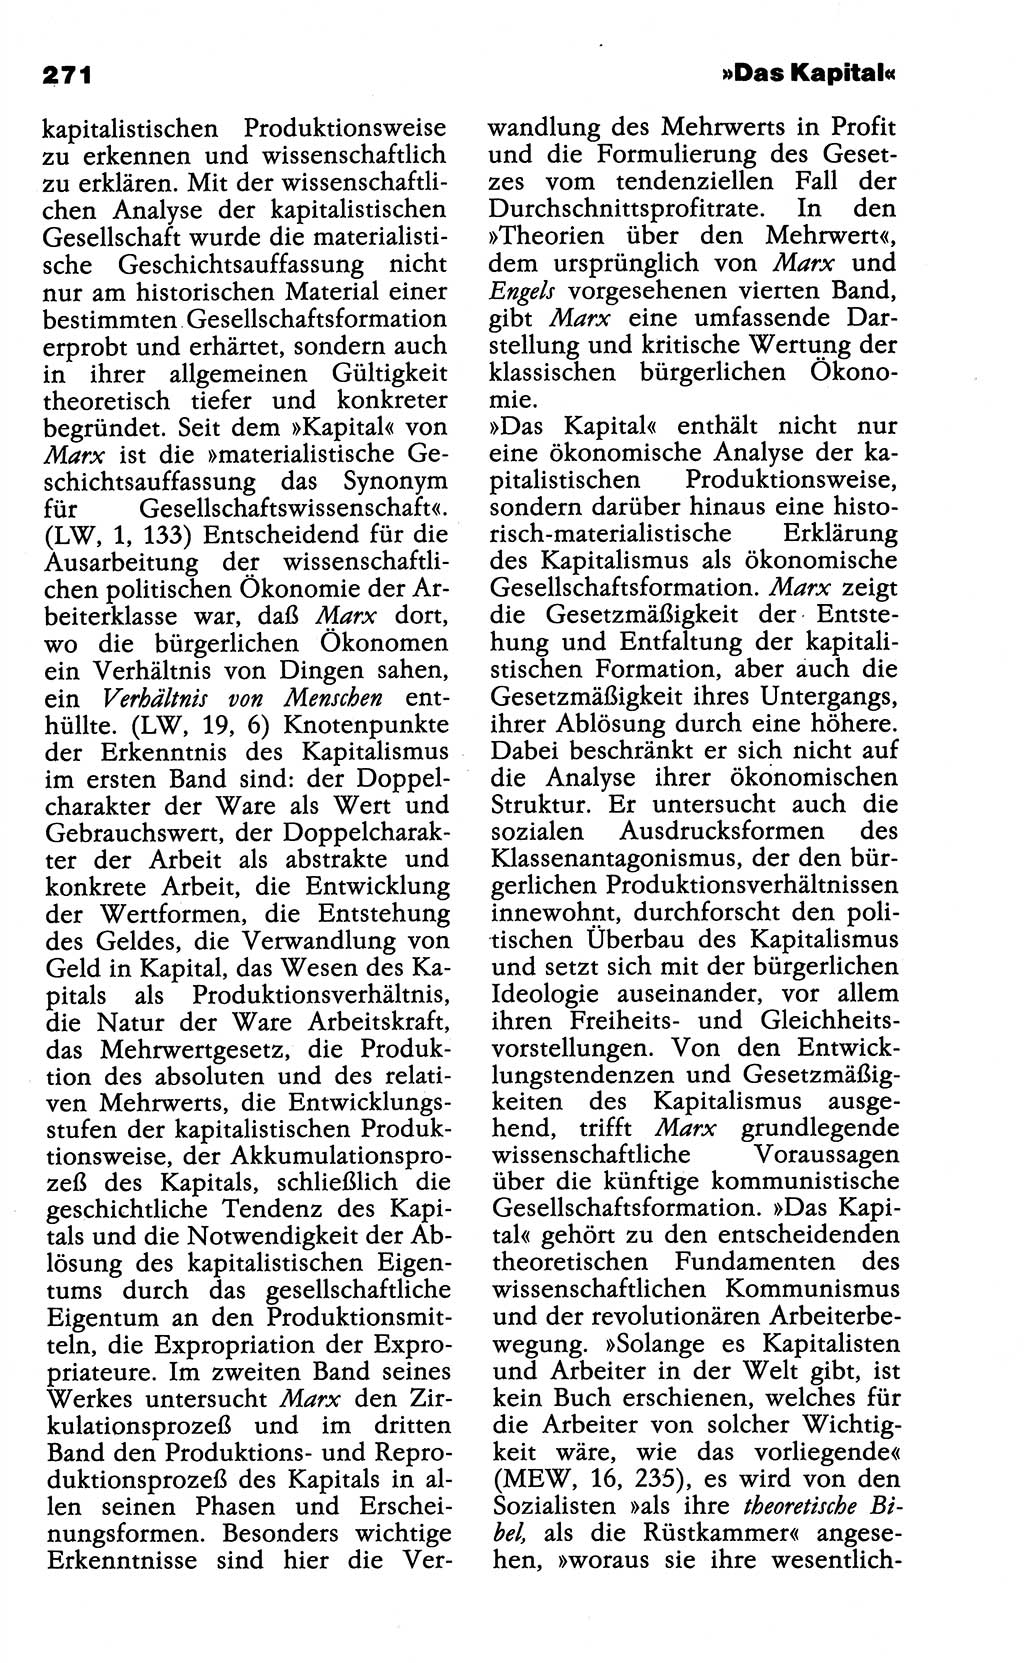 Wörterbuch der marxistisch-leninistischen Philosophie [Deutsche Demokratische Republik (DDR)] 1985, Seite 271 (Wb. ML Phil. DDR 1985, S. 271)